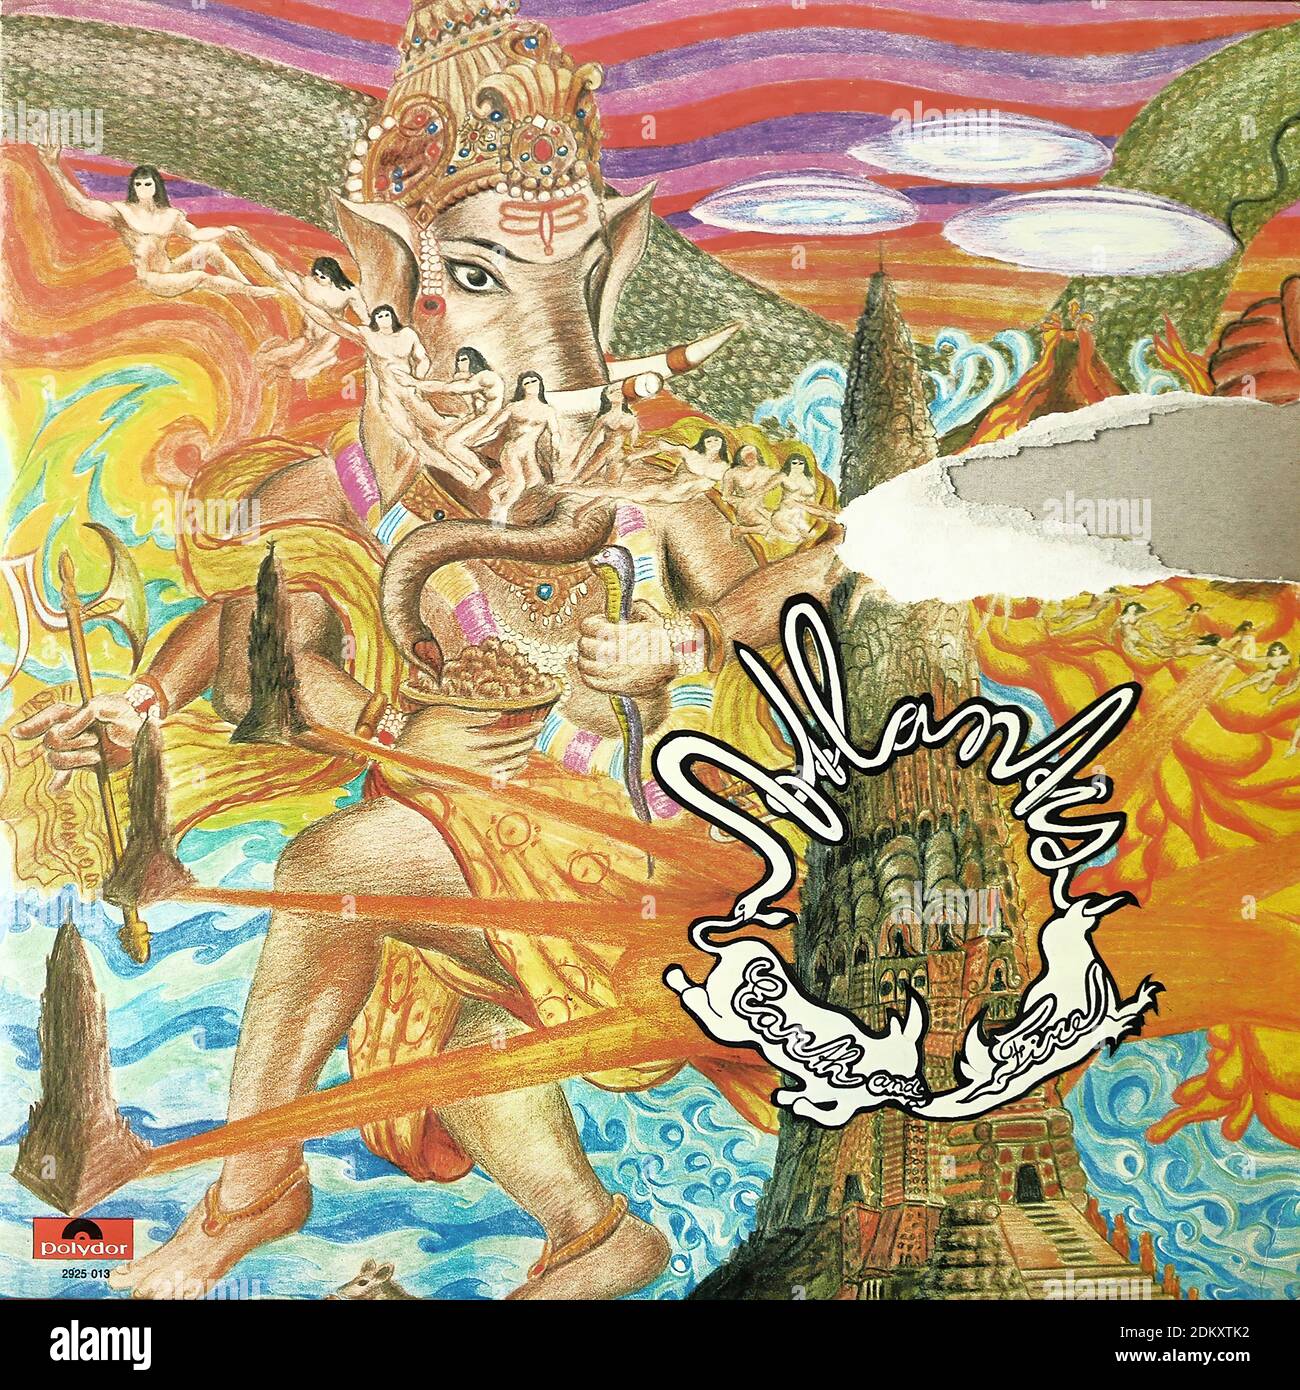 Earth and Fire - Atlantis, Polydor 2925 013 - copertina dell'album in vinile d'epoca Foto Stock